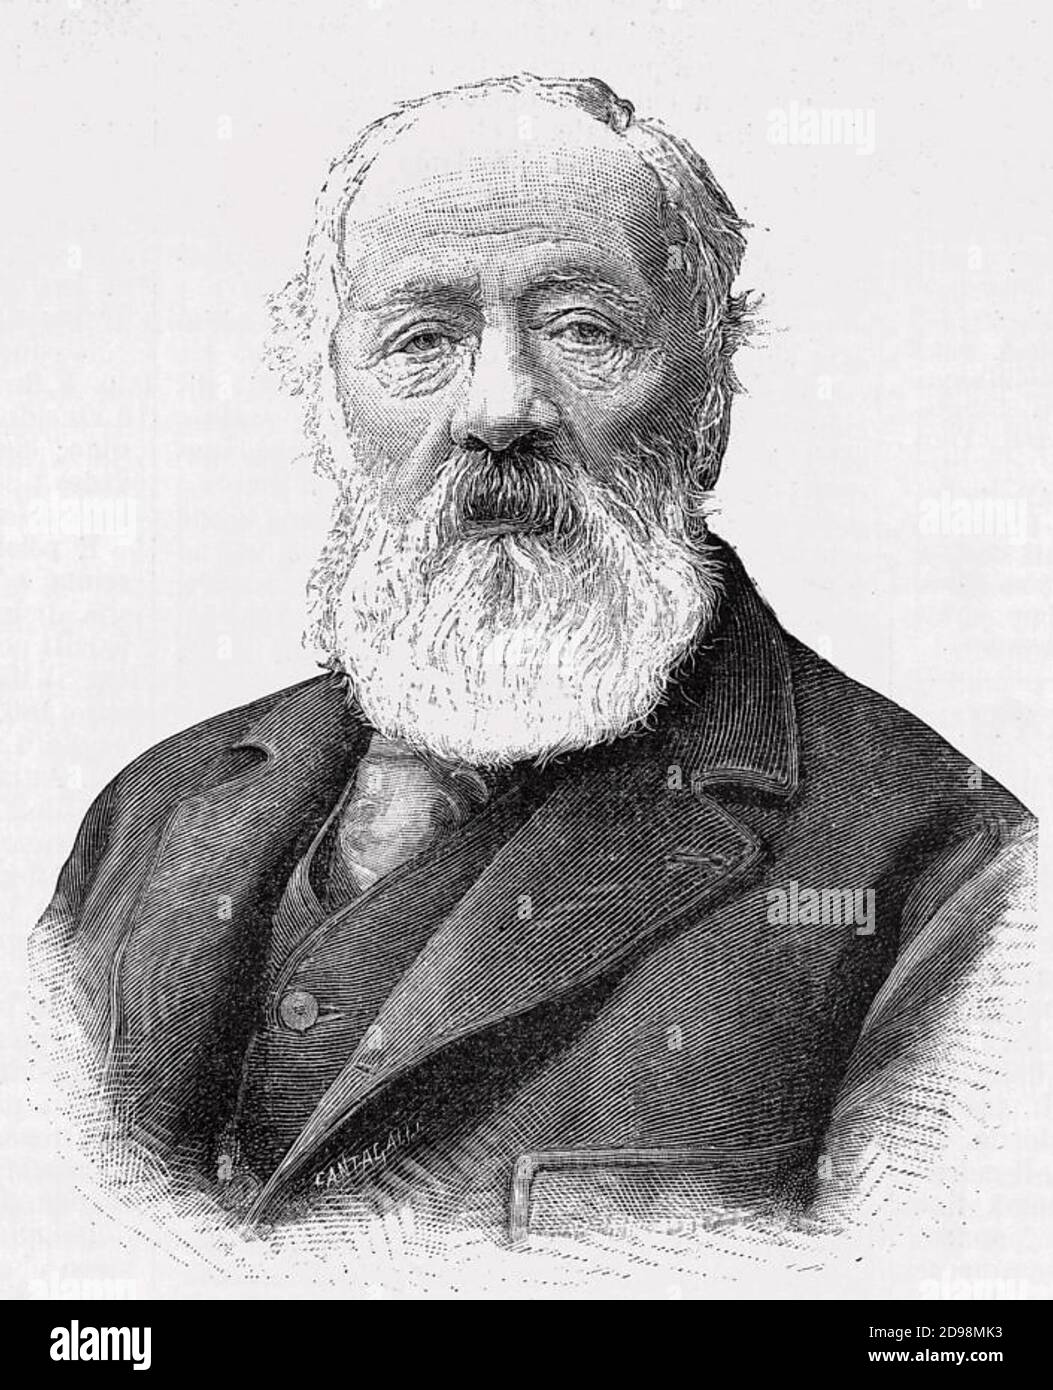 ANTONIO MEUCCI (1808-1889) inventore italiano, circa 1879 Foto Stock